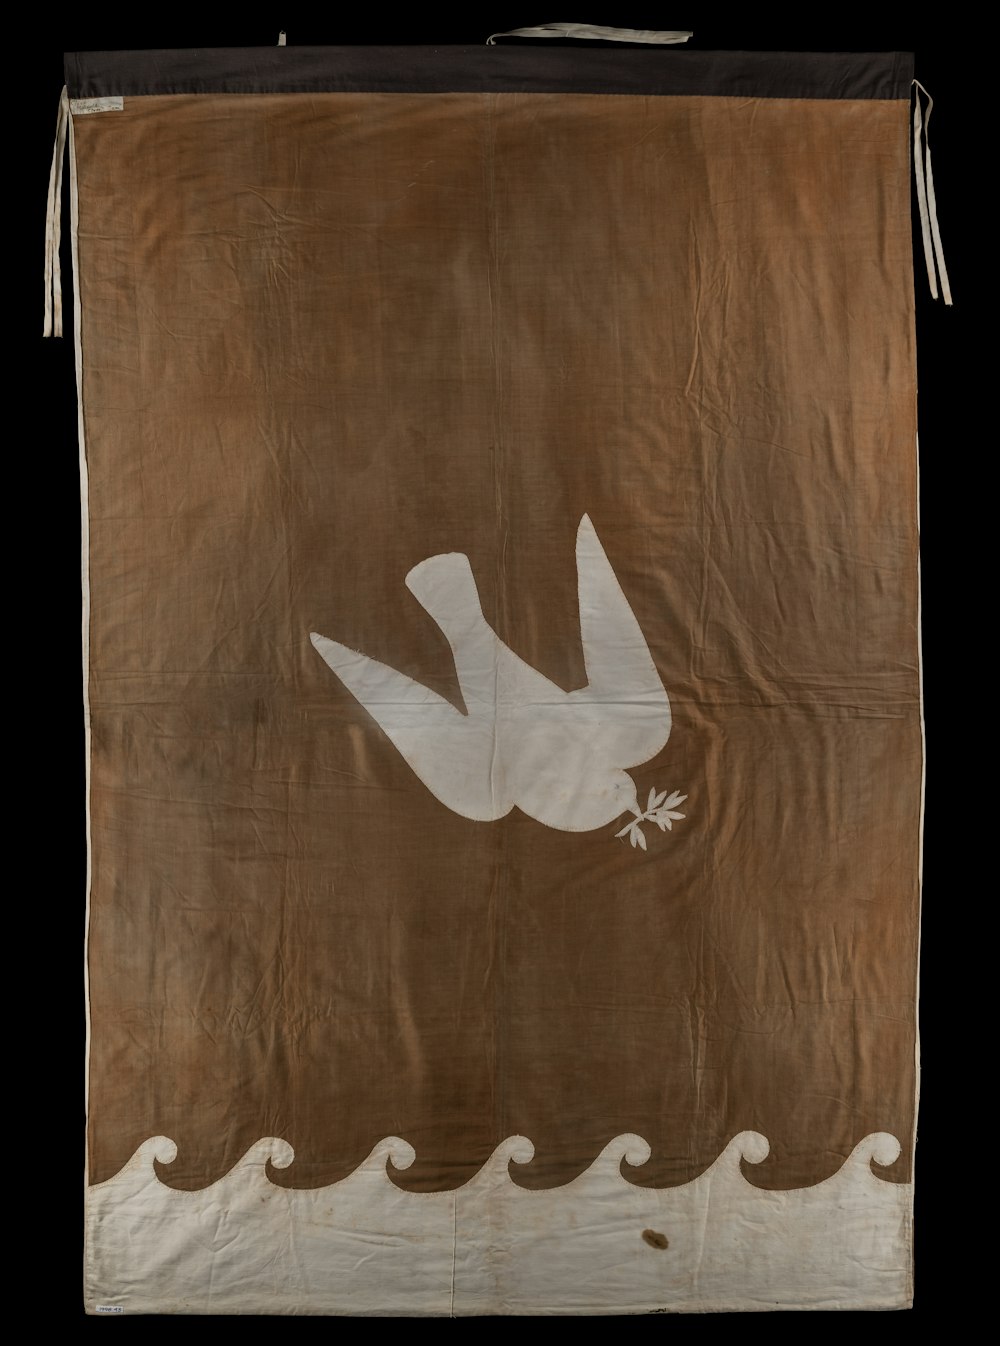 white bird on brown wooden board